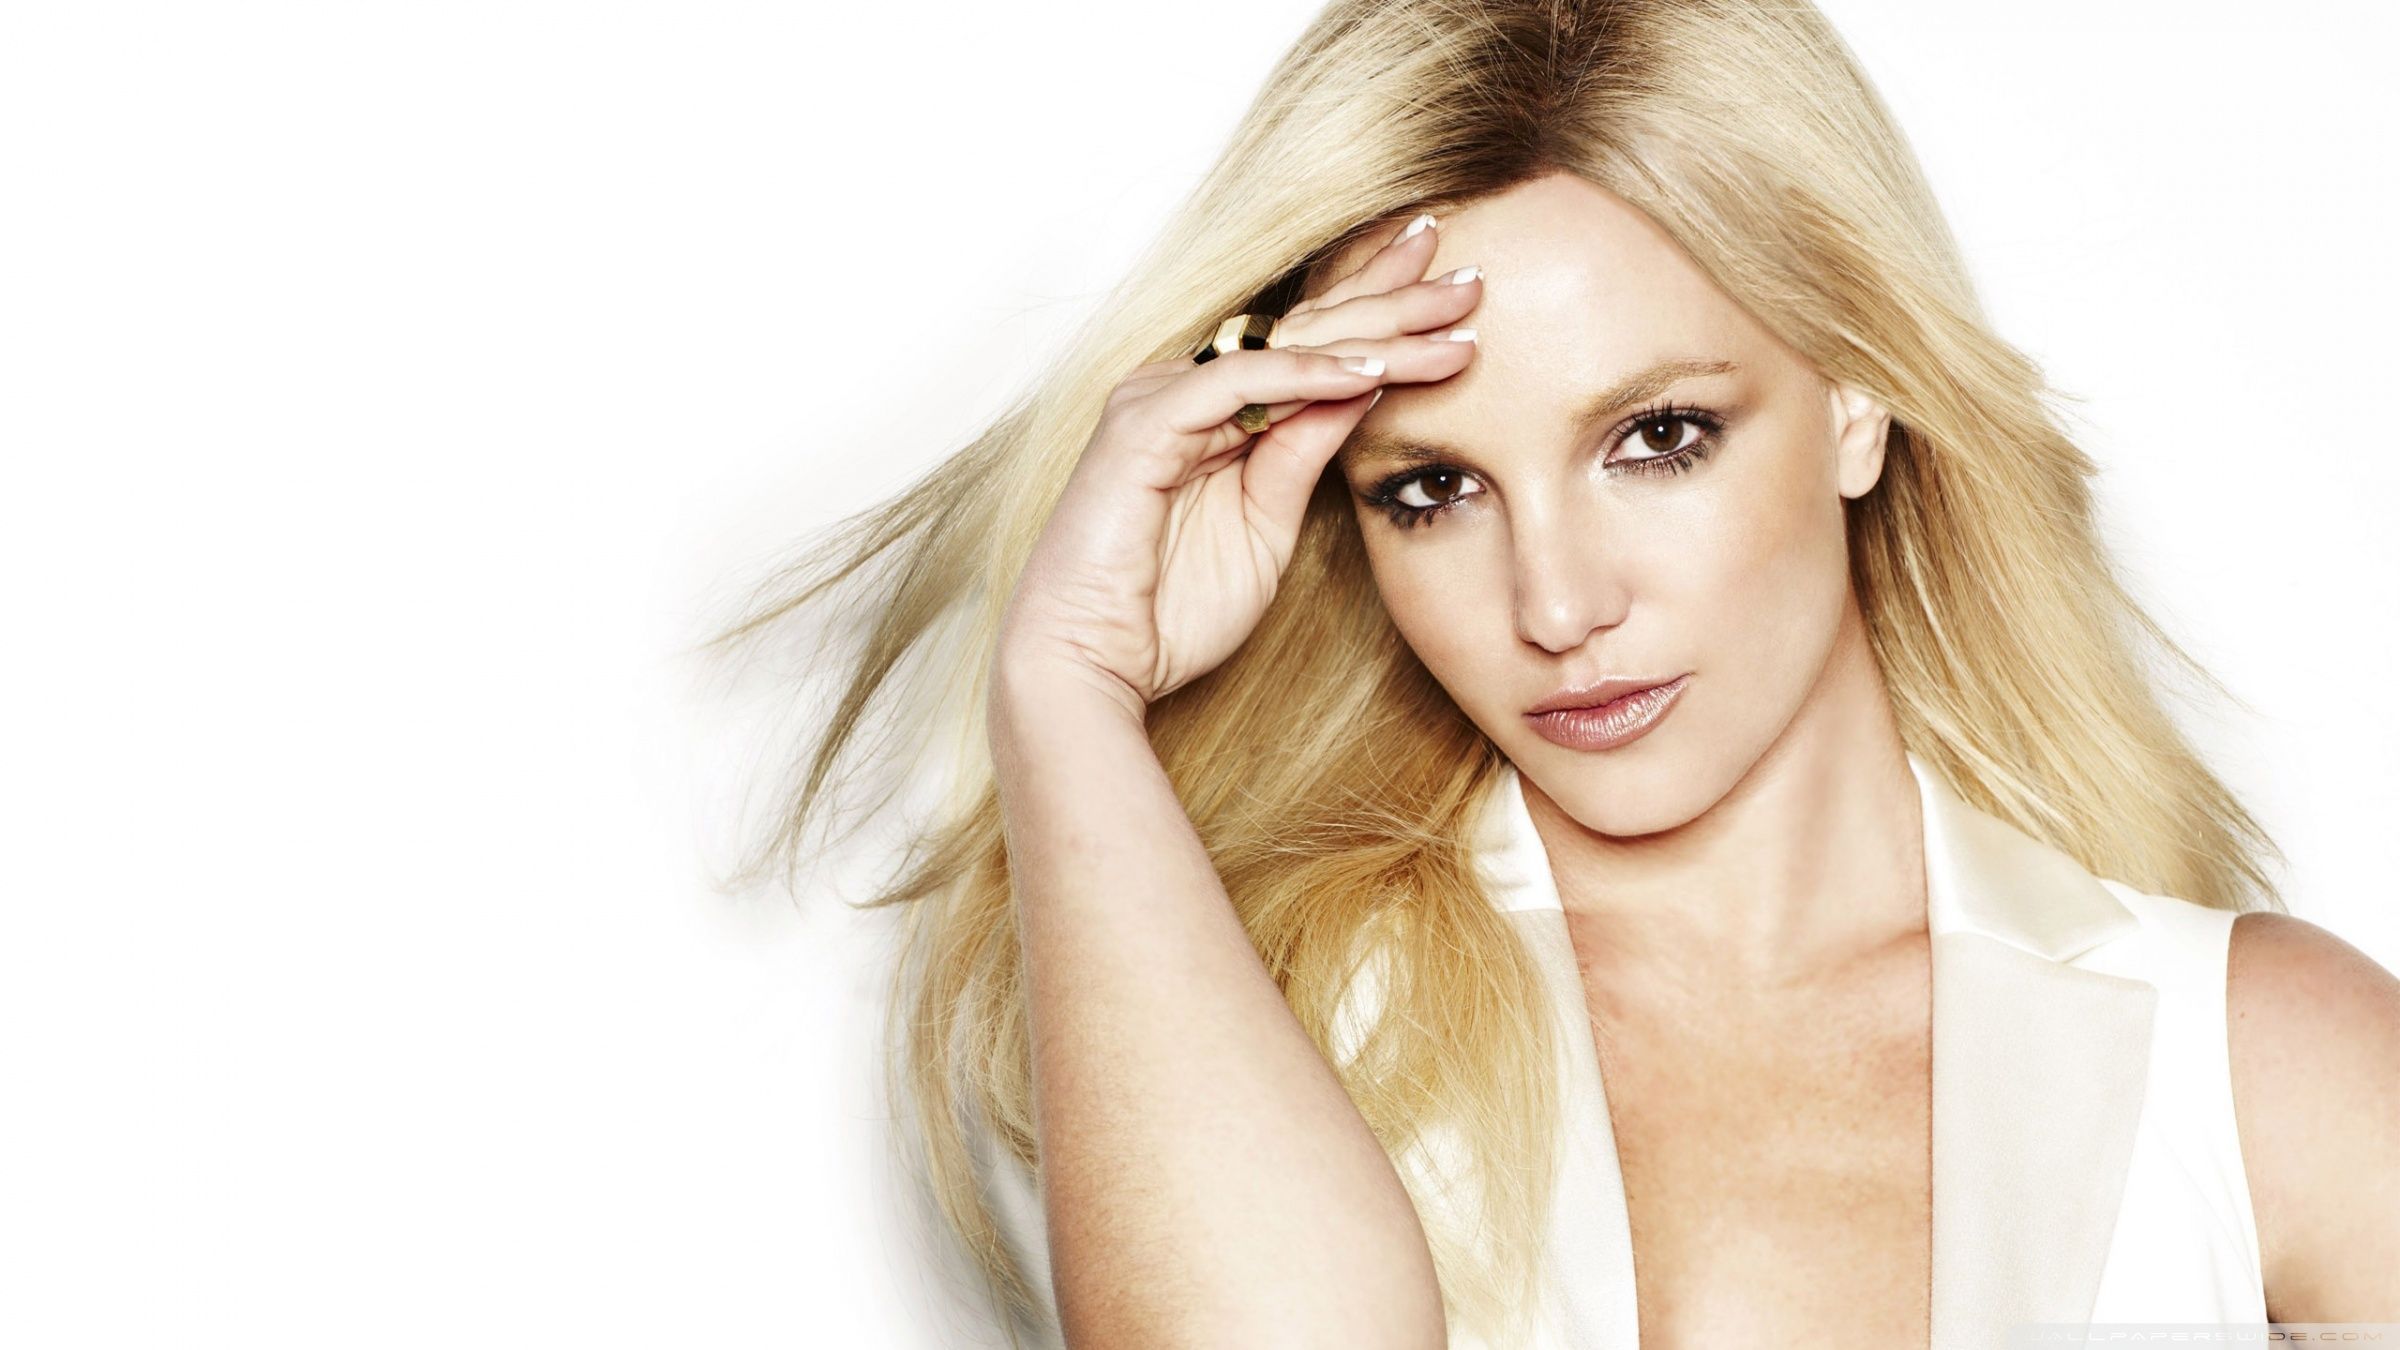 Britney Spears 2014 Wallpaper Cute Girl